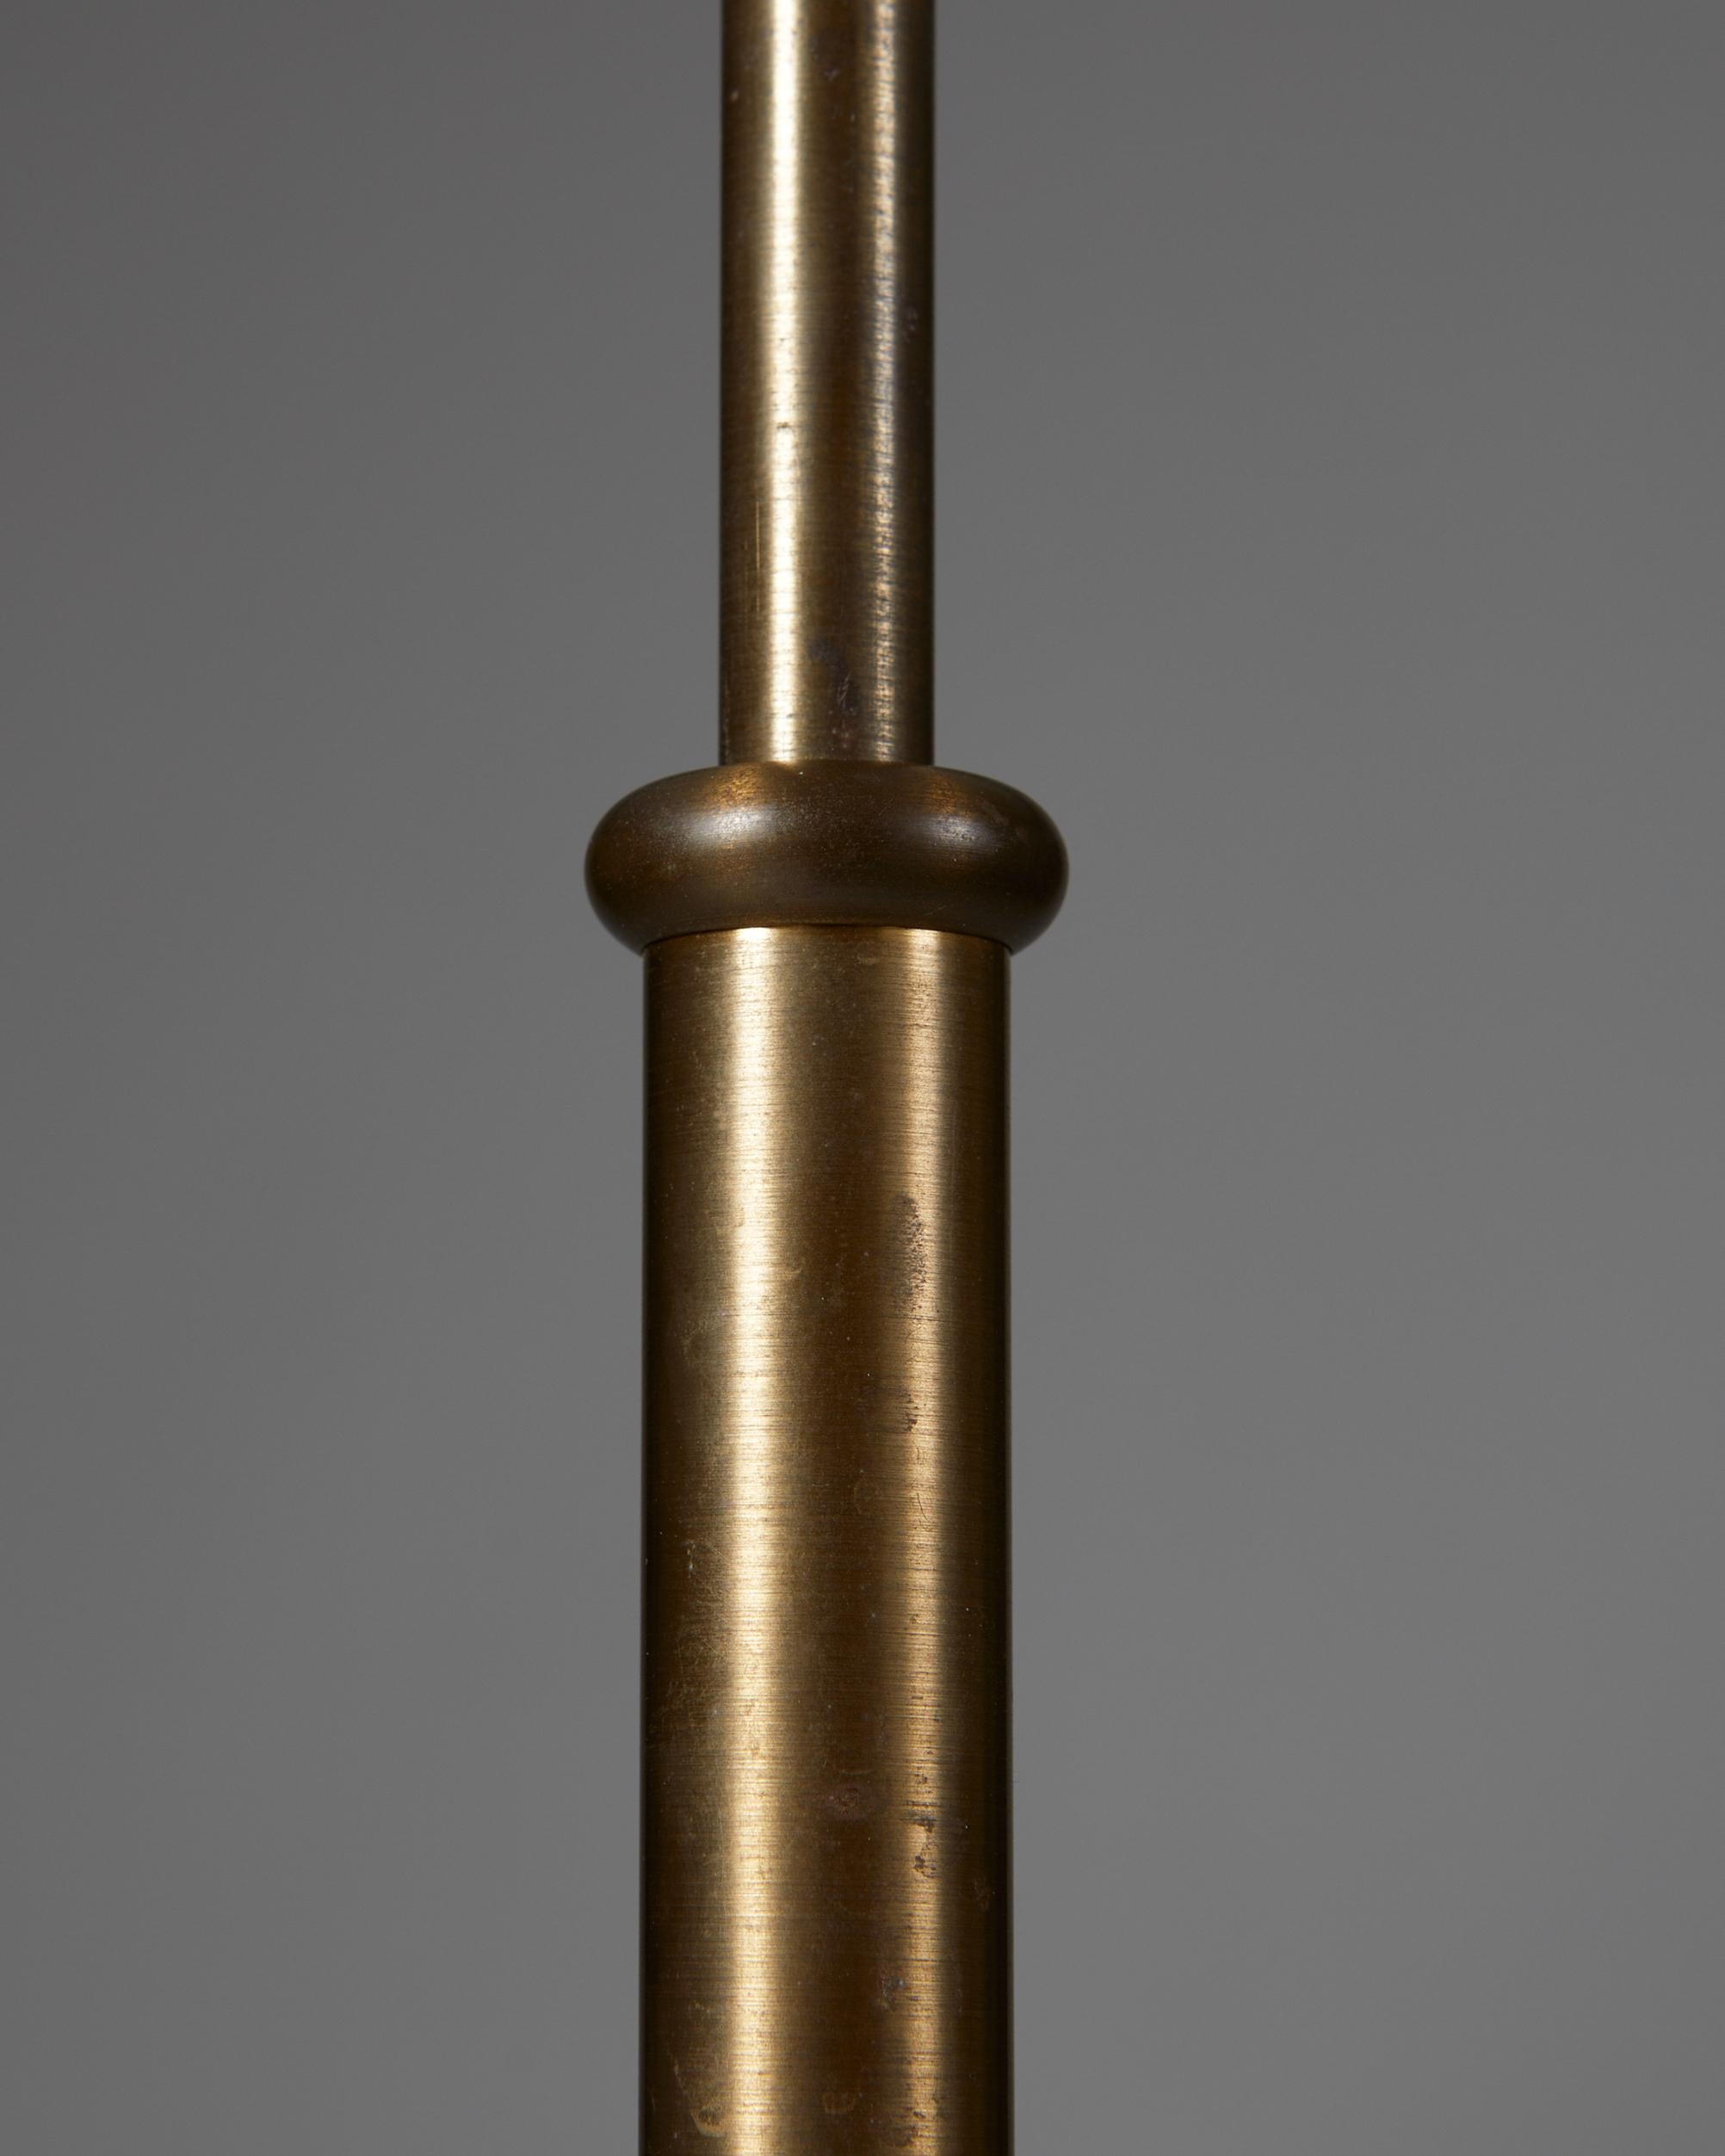 Mid-Century Modern Pair of Floor Lamps Model 2326 Designed by Josef Frank for Svenskt Tenn, Sweden